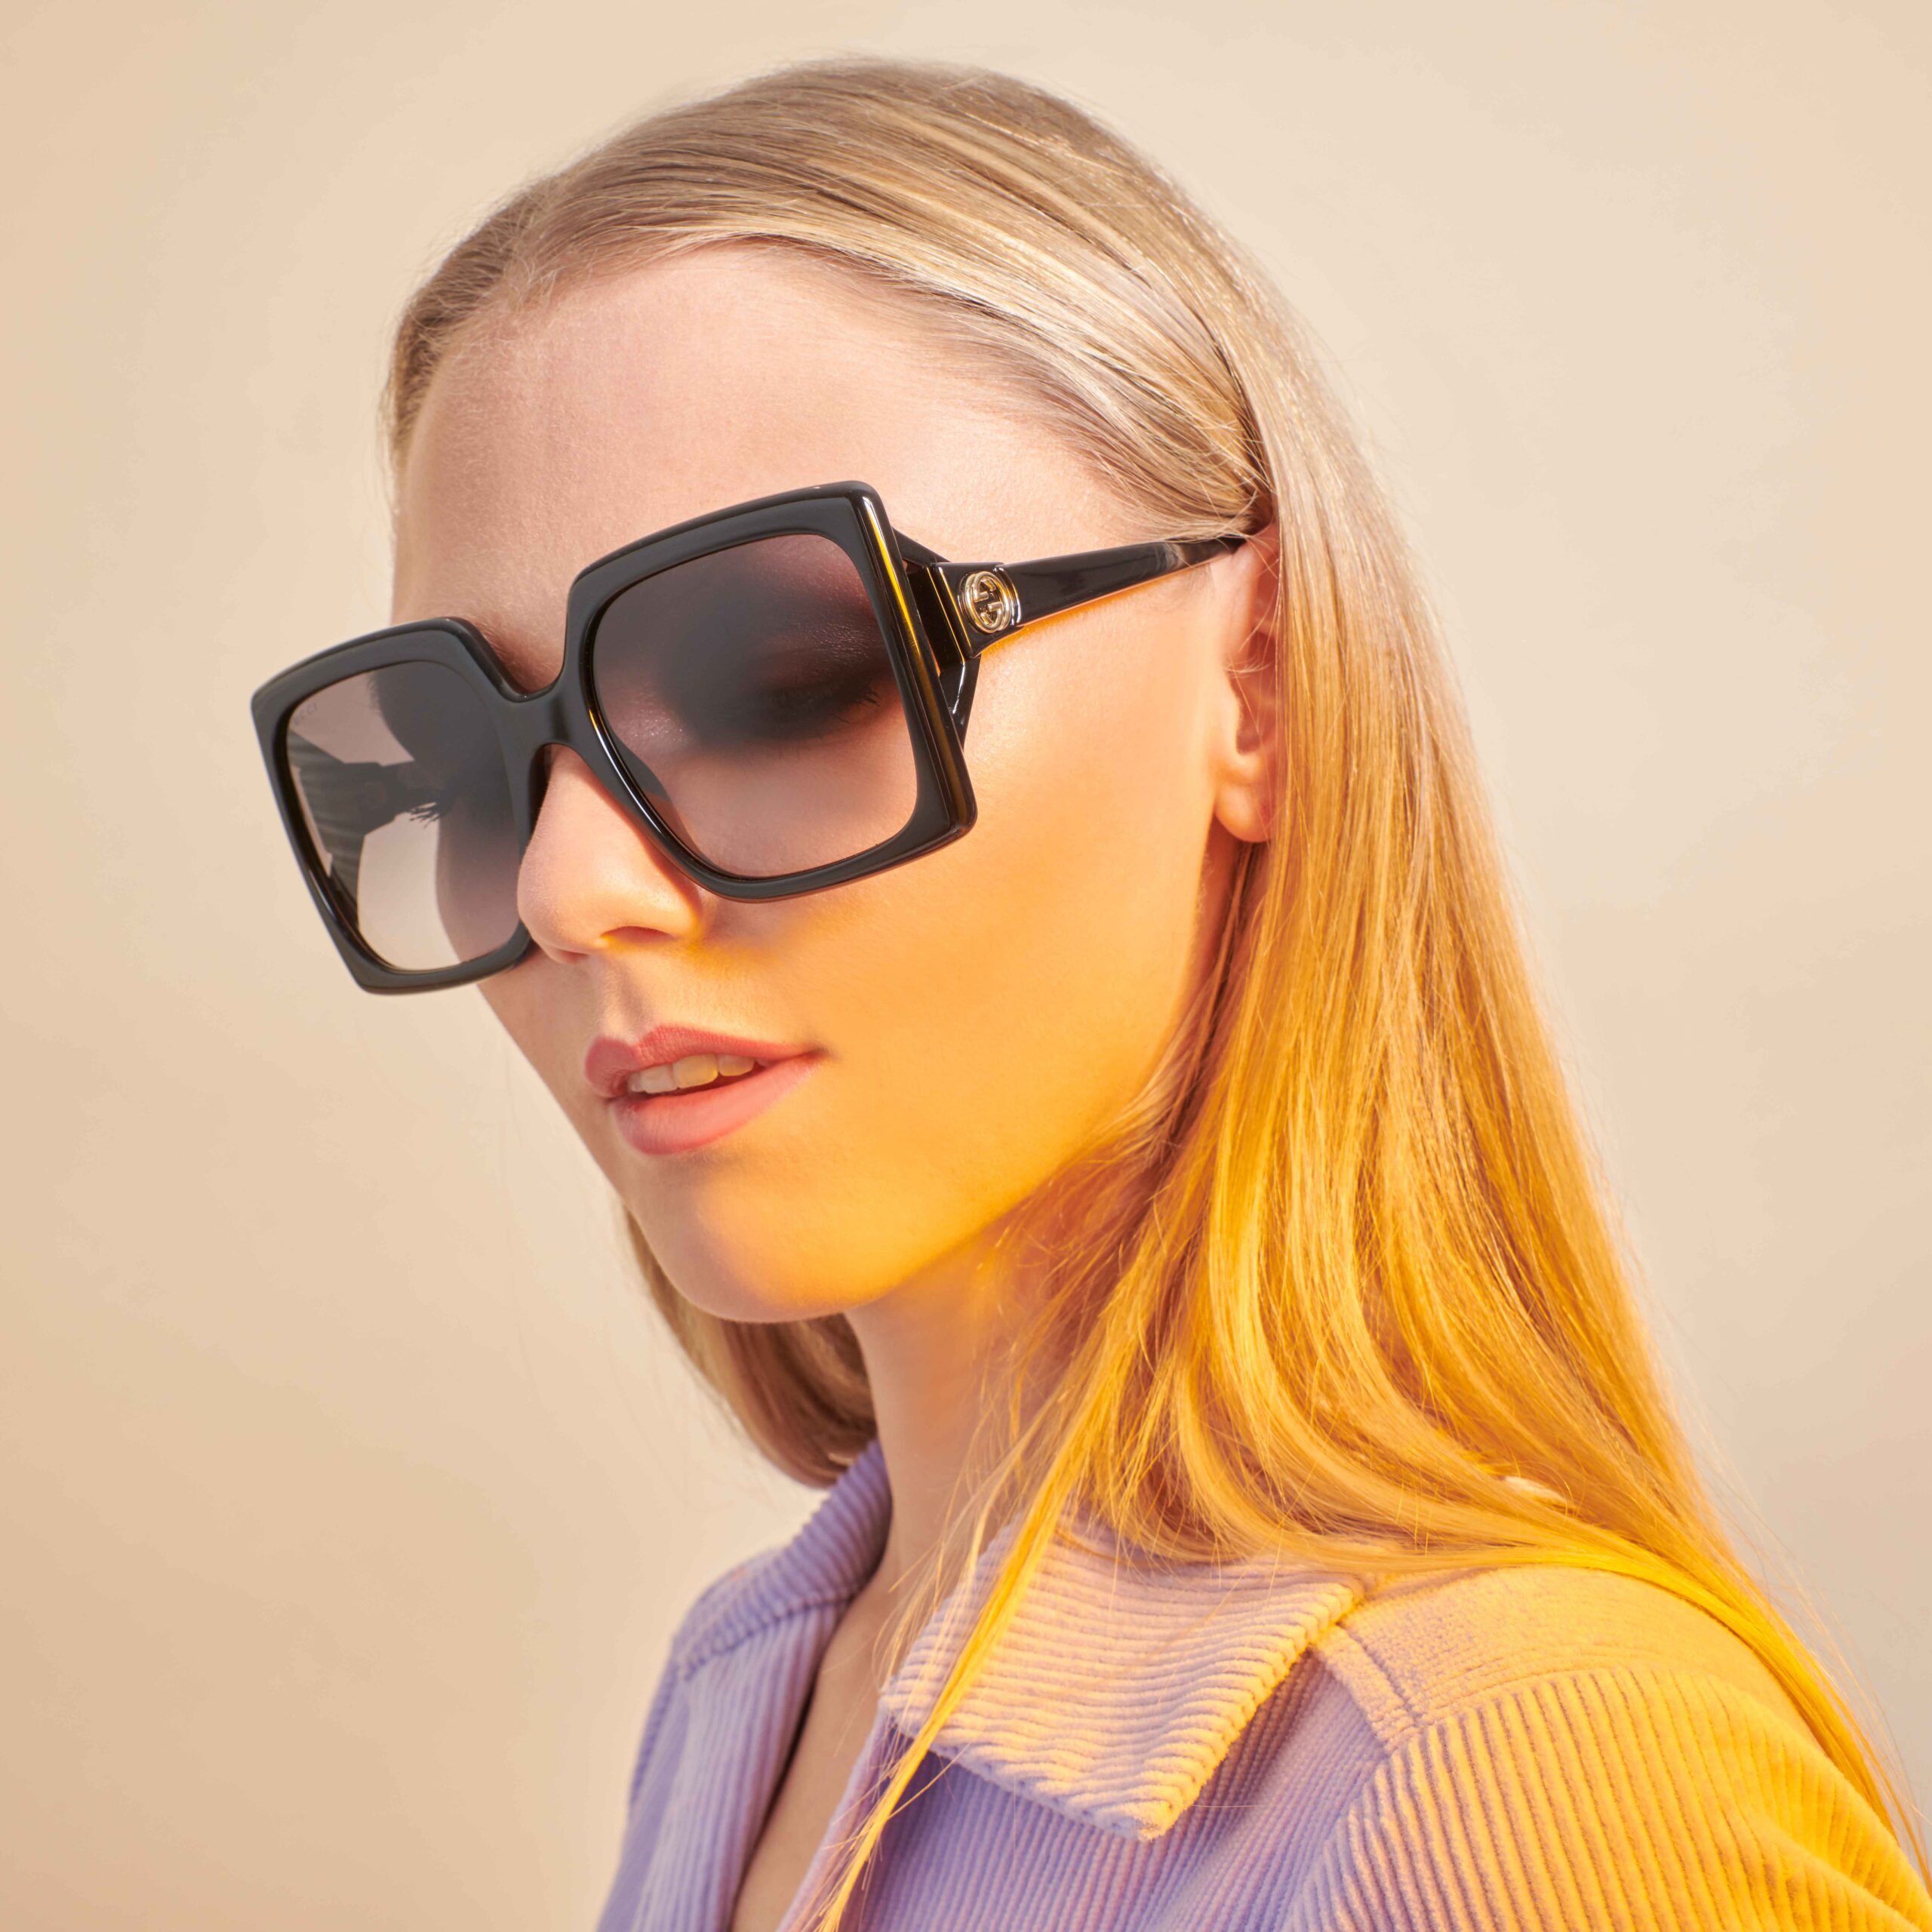 Gucci zonnebrillen - shop online of in de winkel van optiek Lammerant